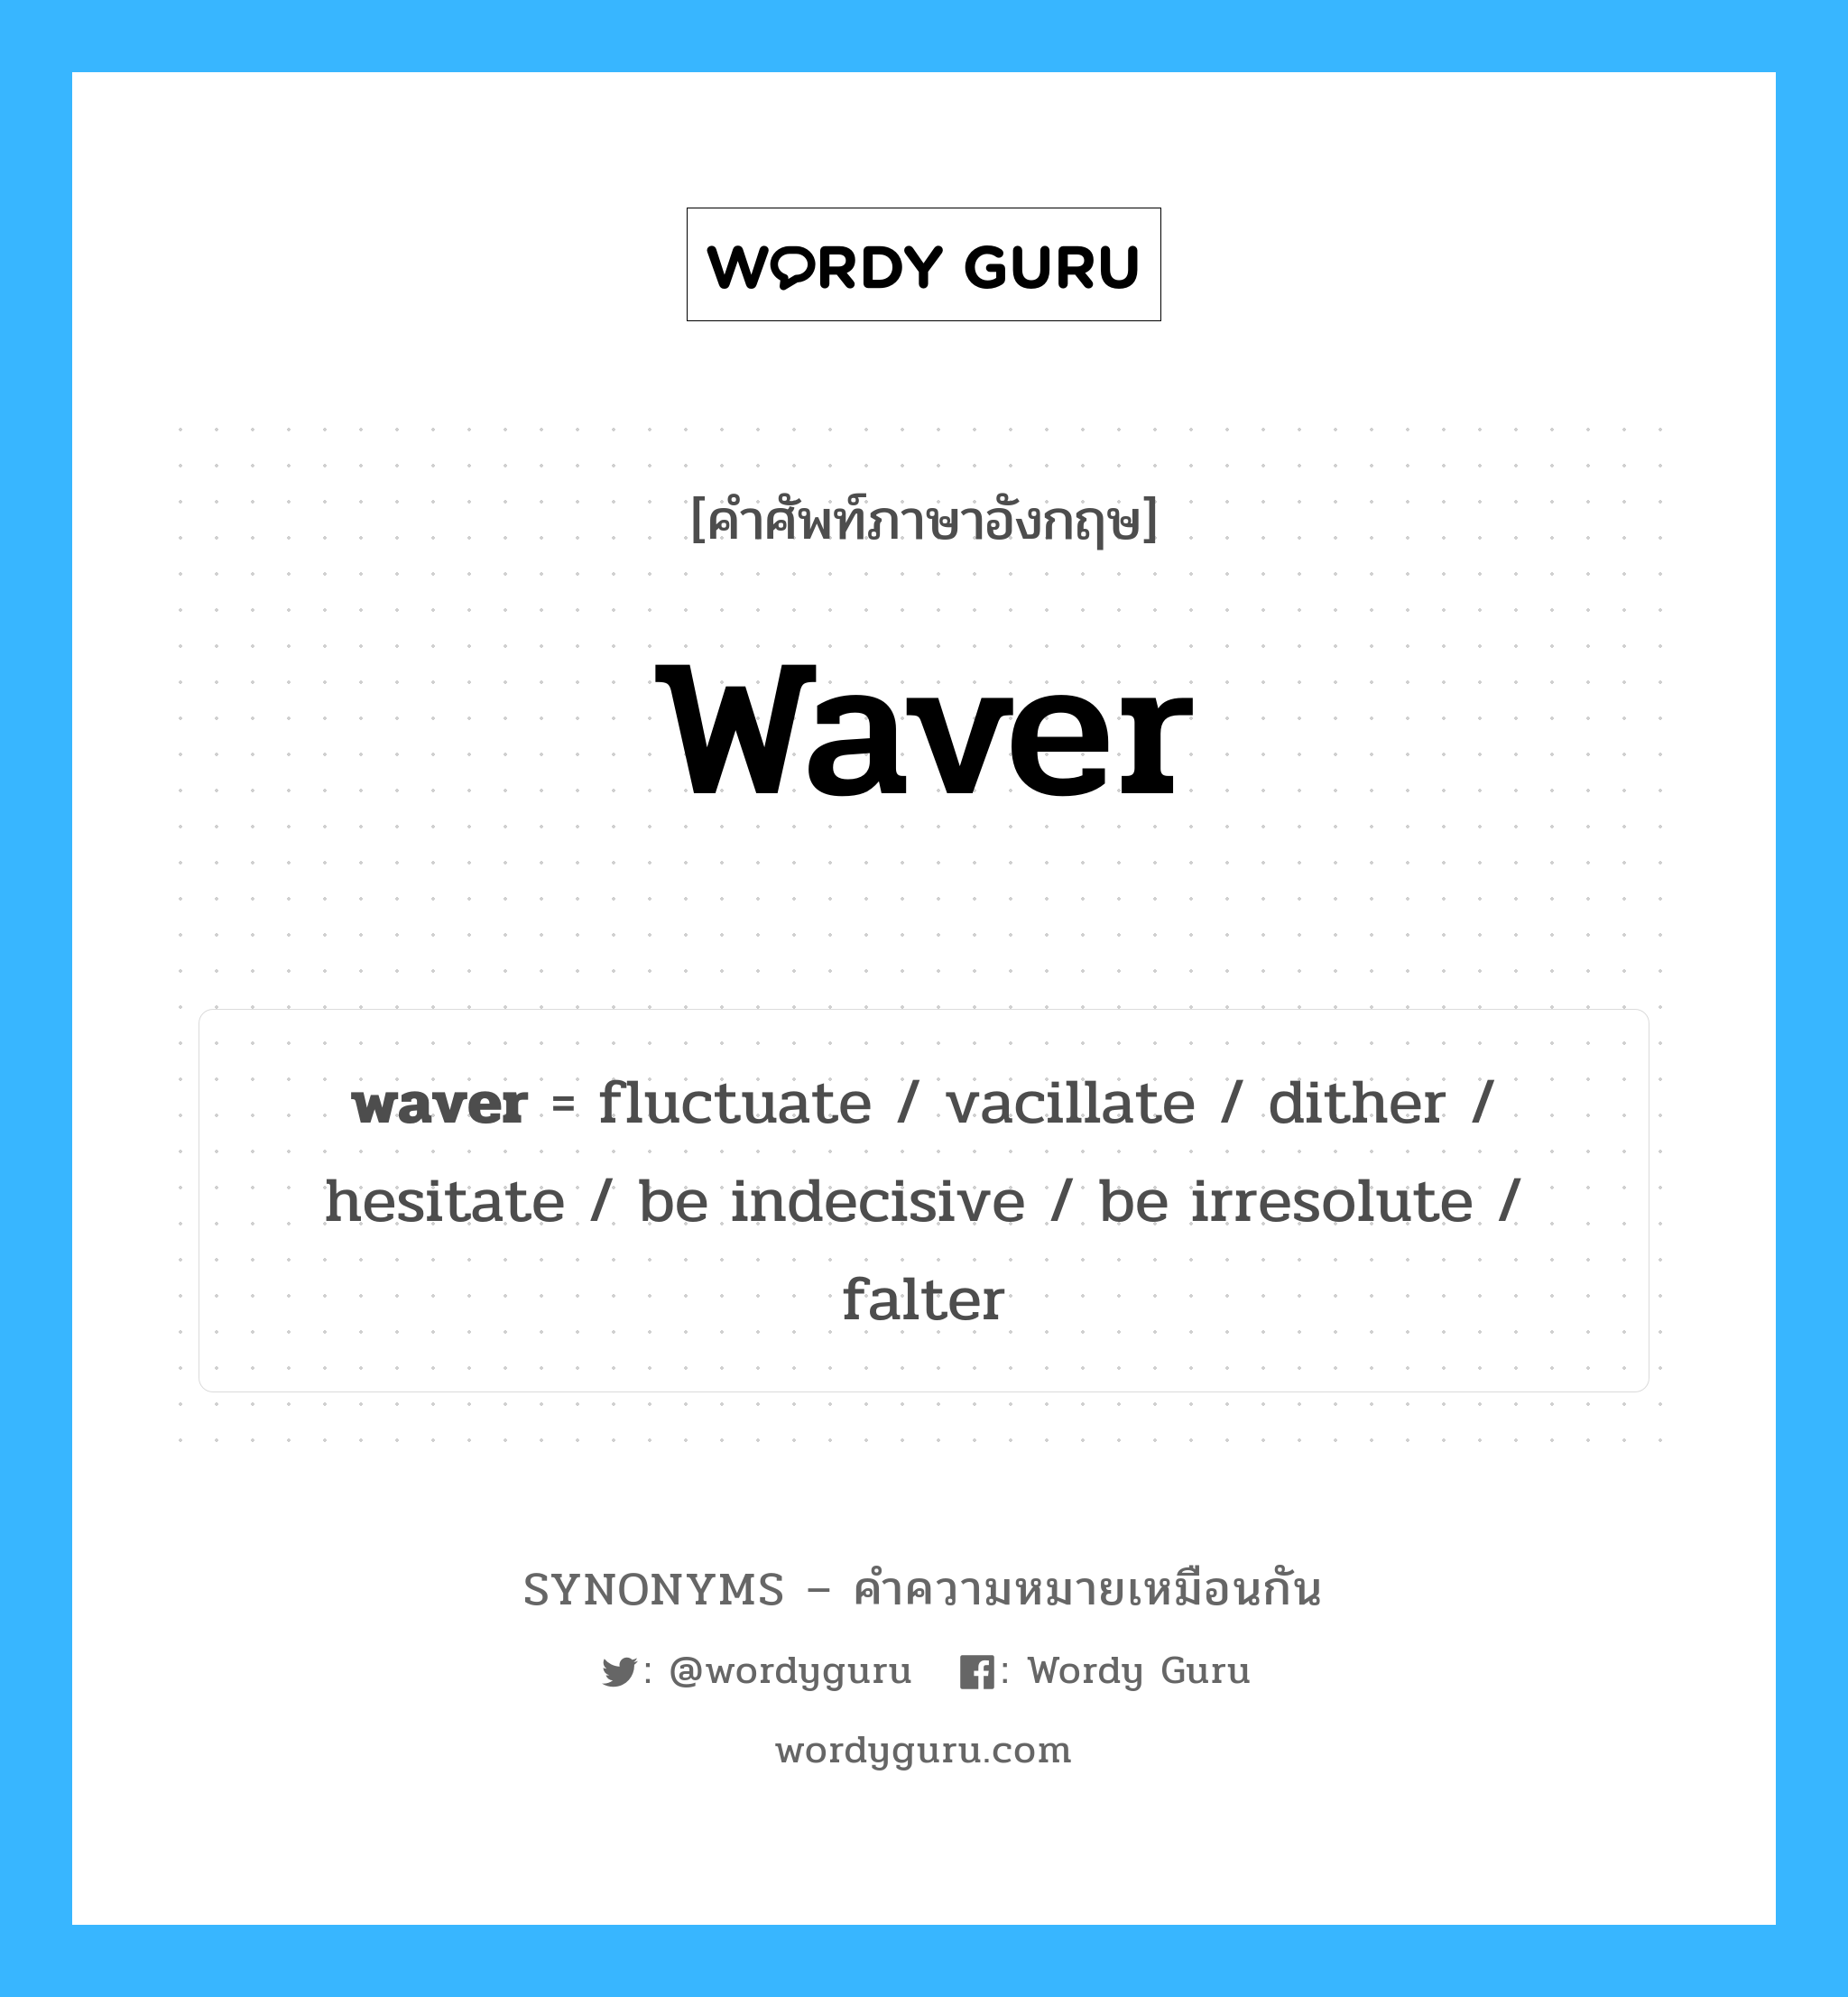 falter เป็นหนึ่งใน waver และมีคำอื่น ๆ อีกดังนี้, คำศัพท์ภาษาอังกฤษ falter ความหมายคล้ายกันกับ waver แปลว่า ผิด หมวด waver